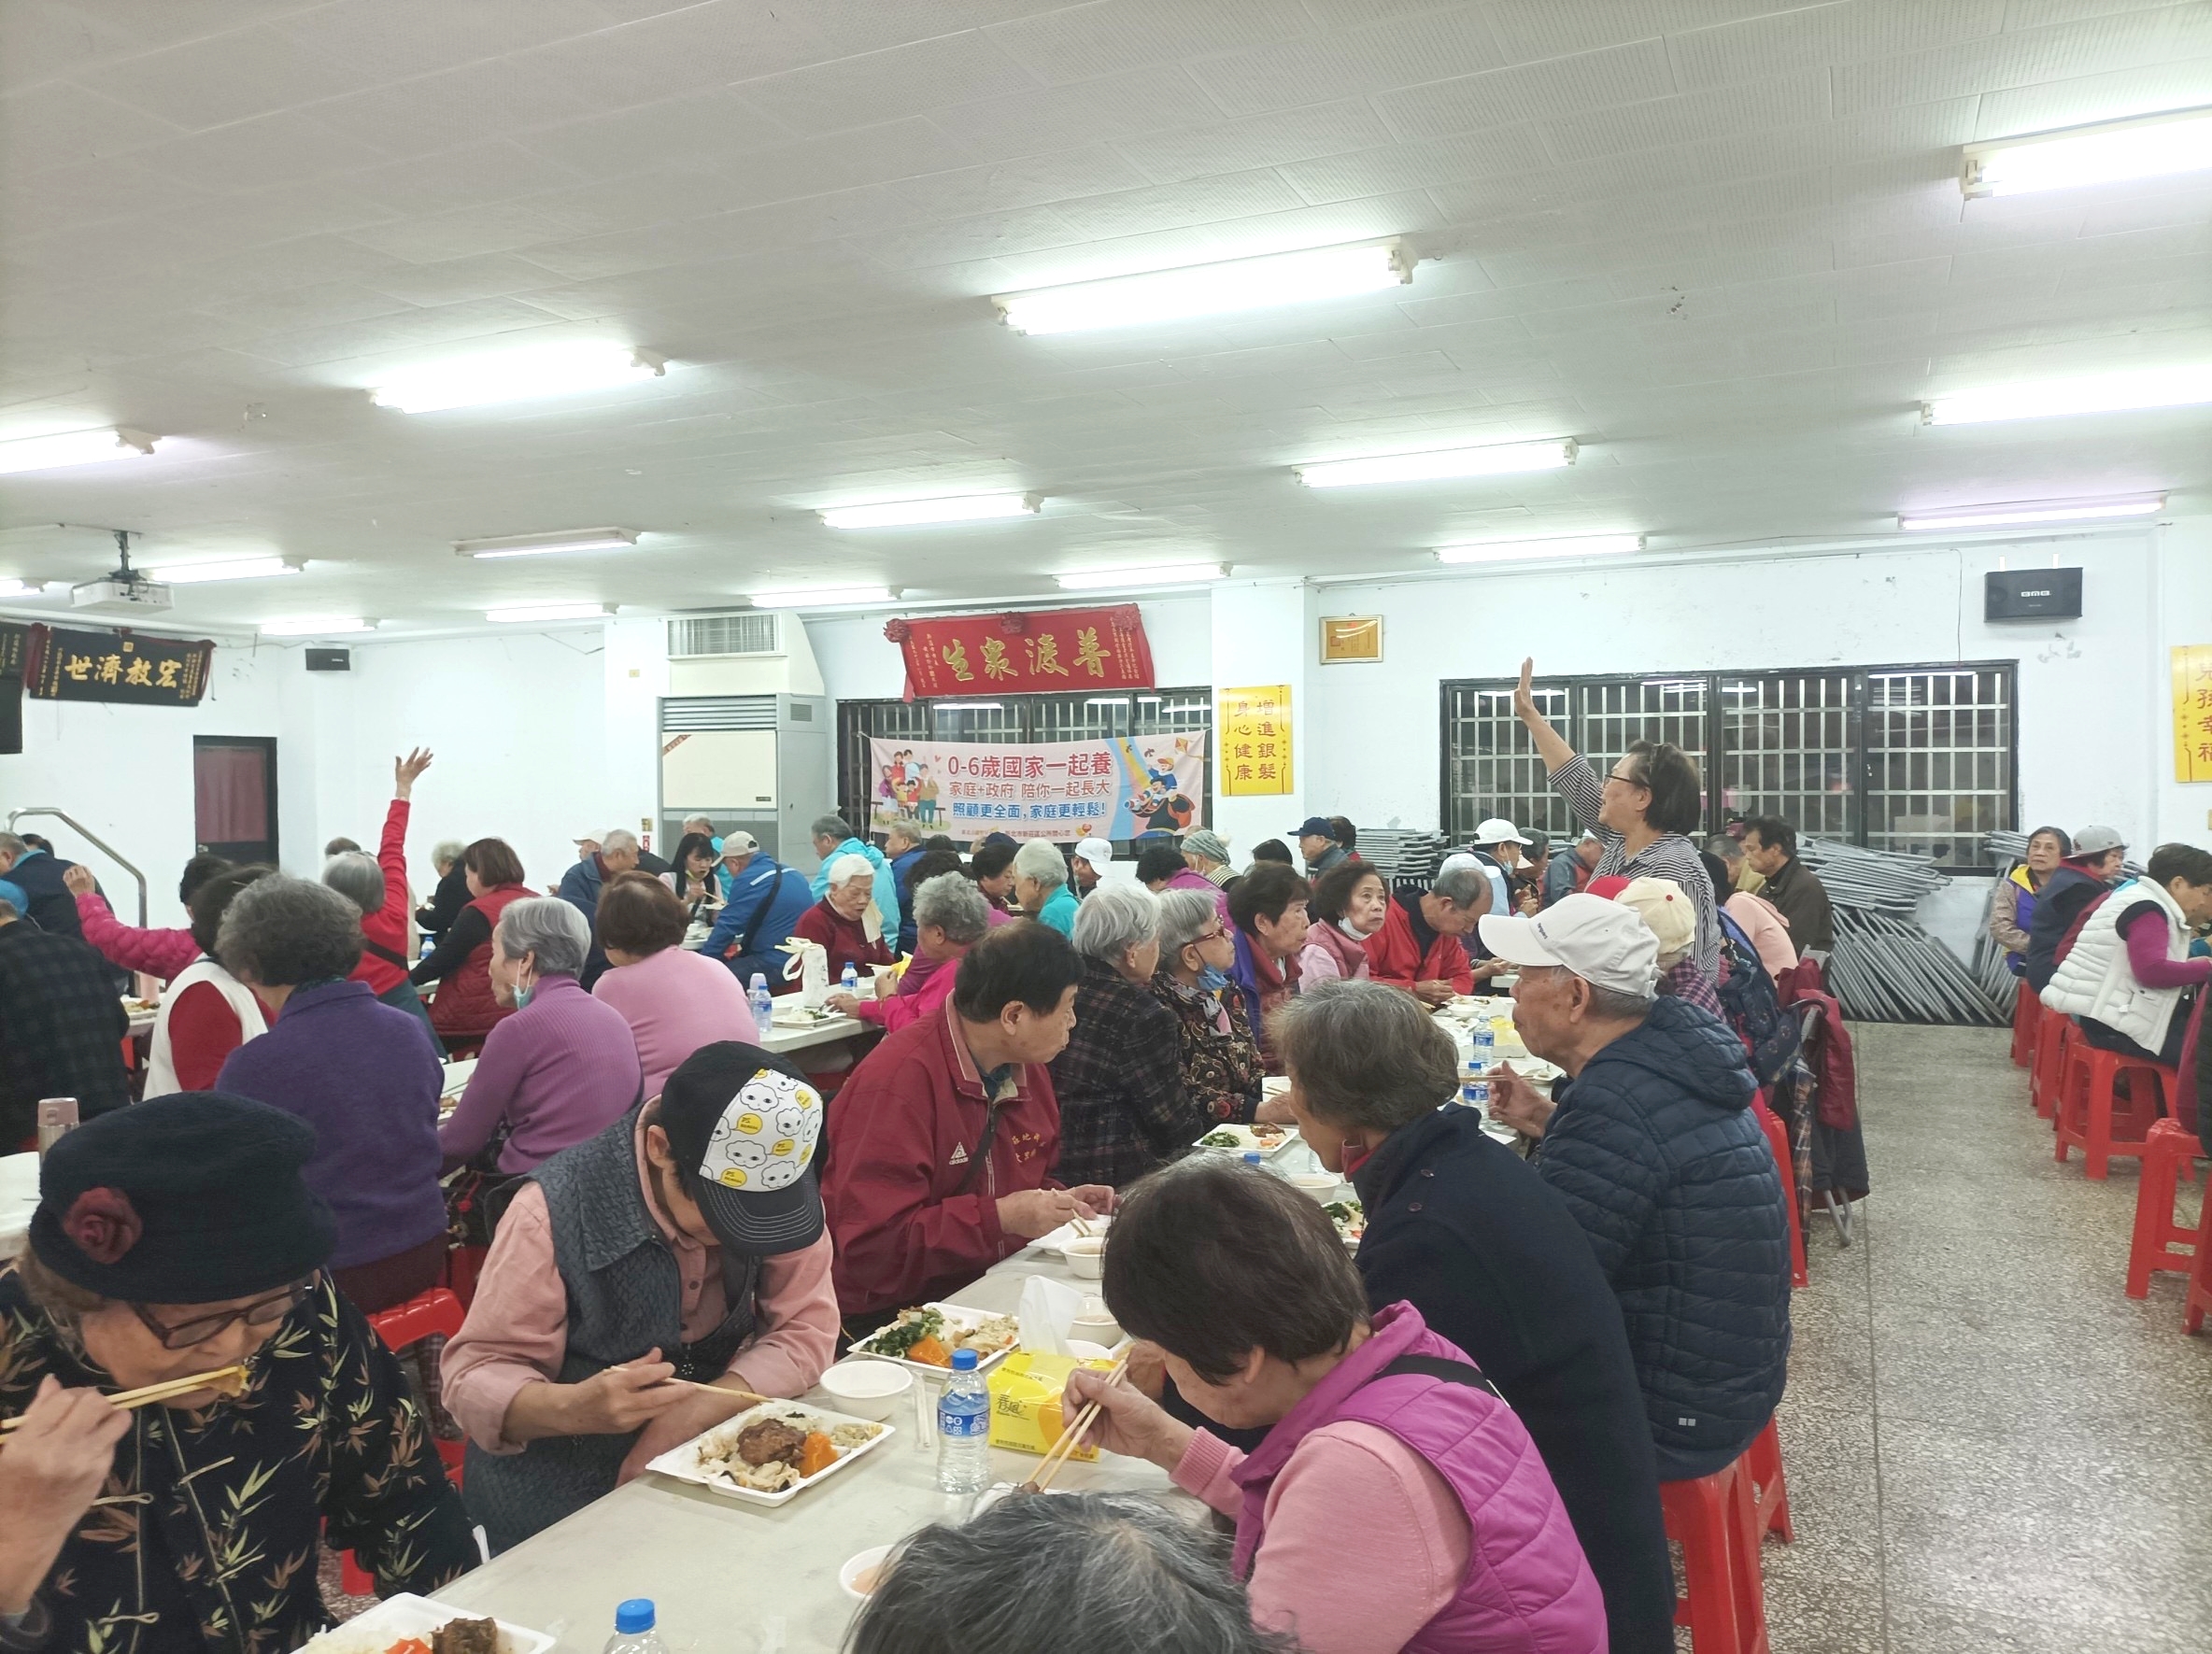 地藏庵(大眾廟)地藏庵每月十五日舉辦共餐活動